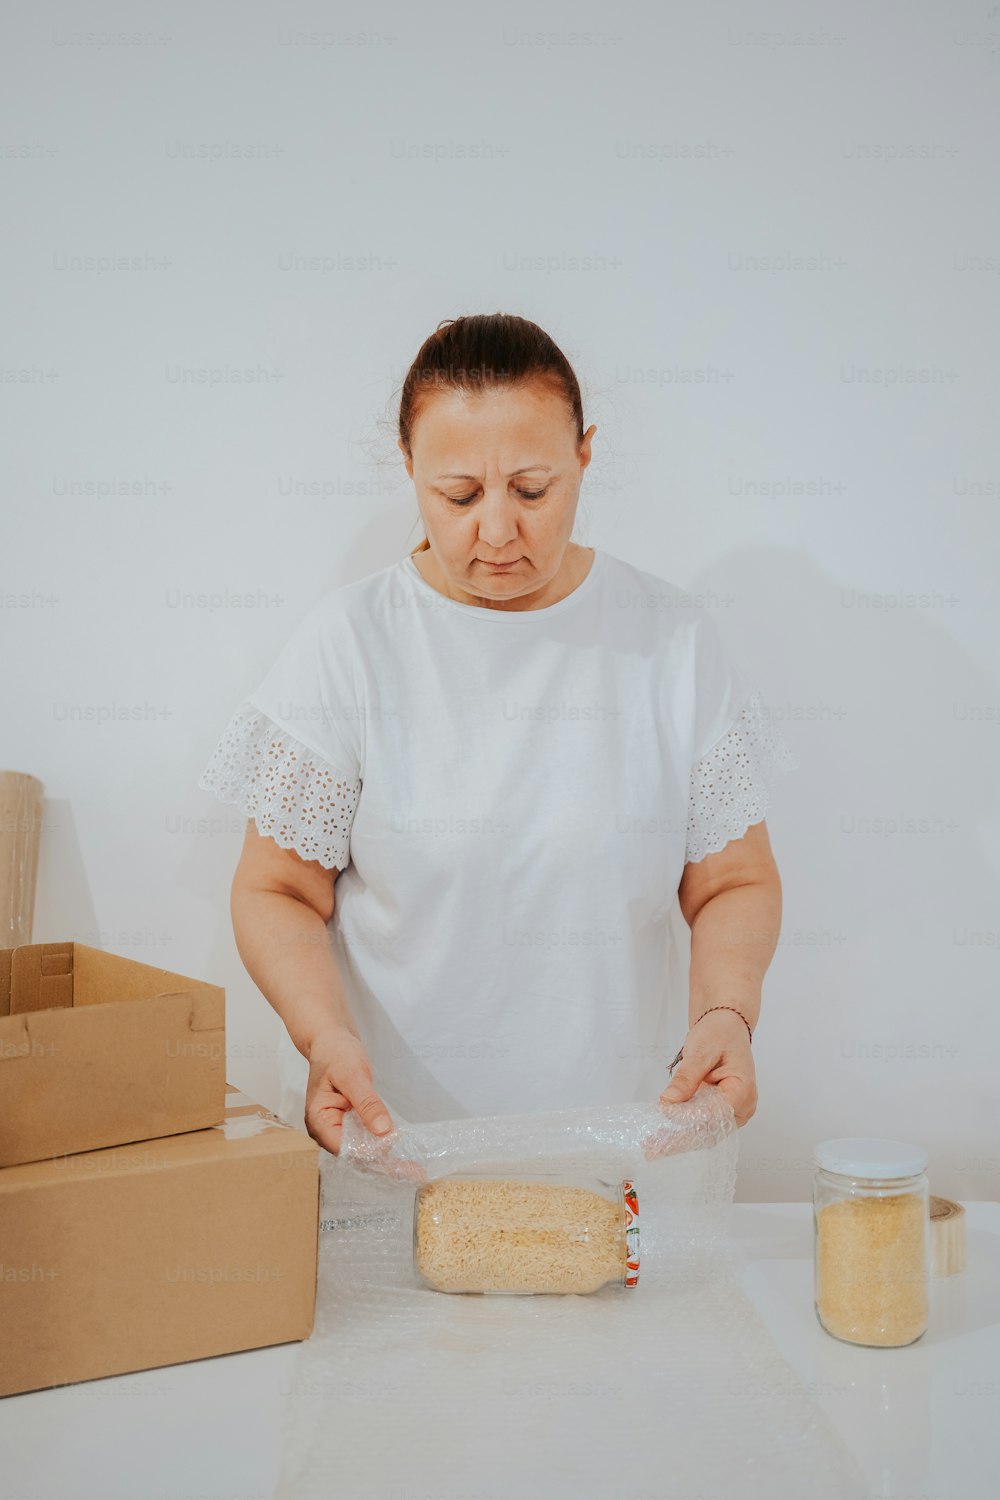 白いシャツを着た女性がケーキを作っている